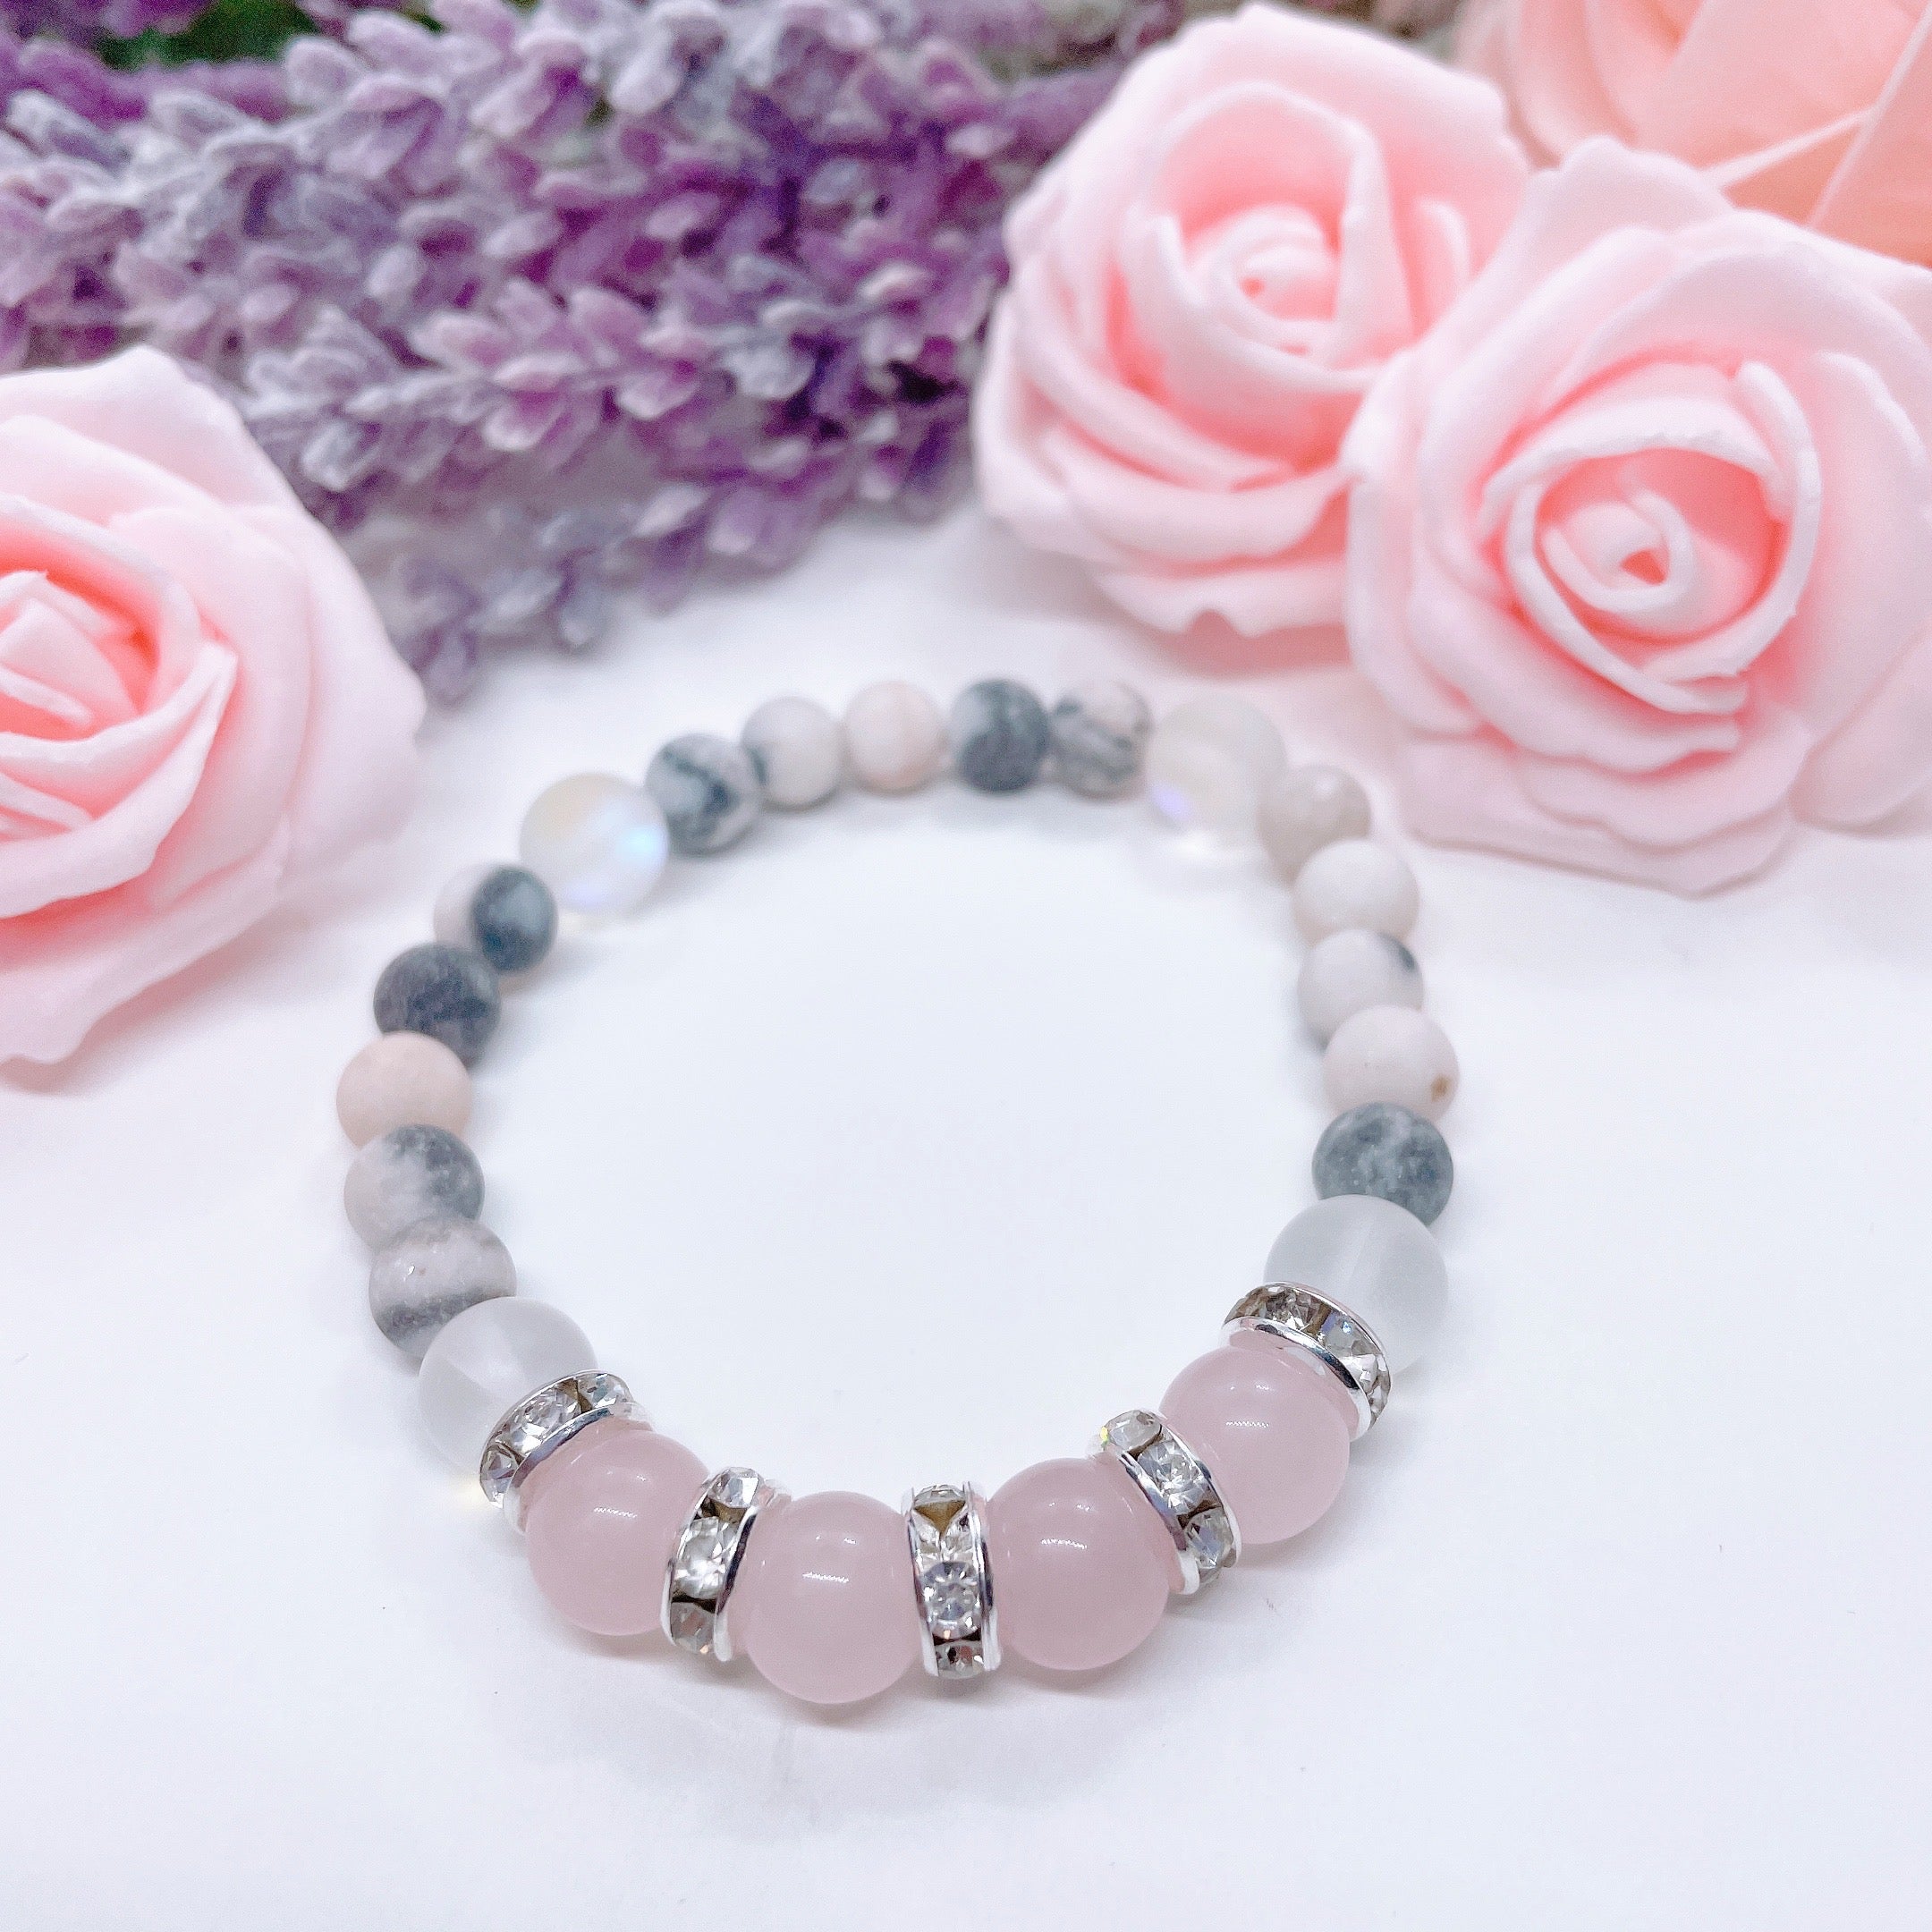 Rose Quartz Large Bead Gemstone Bracelet for Joy